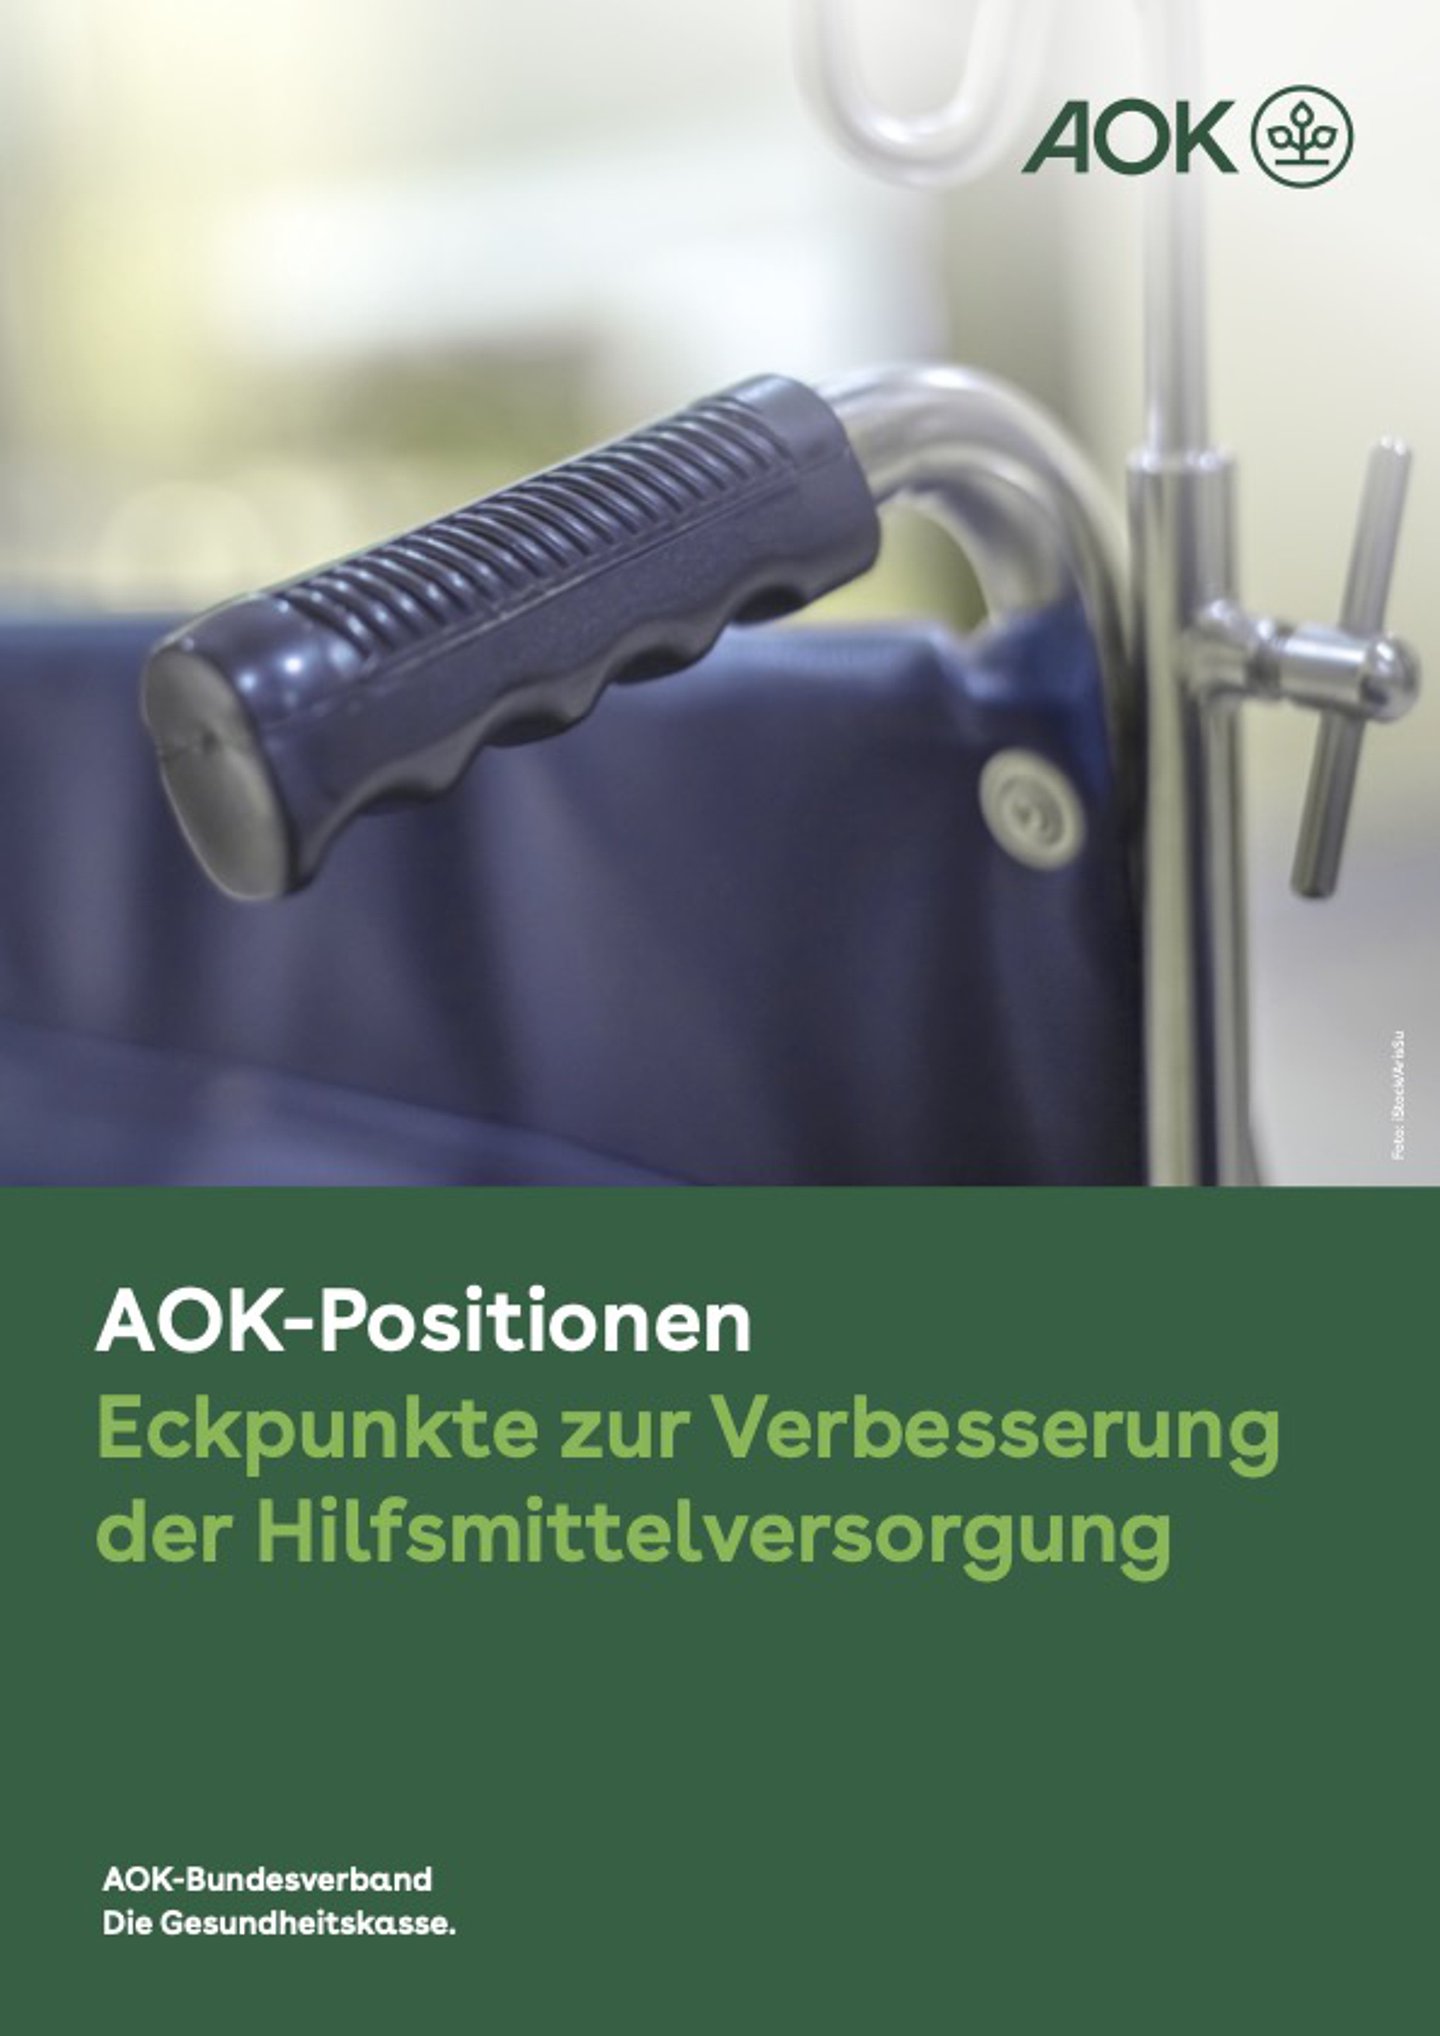 Titelbild: AOK-Positionspapier zur Verbesserungen Hilfsmittelversorgung